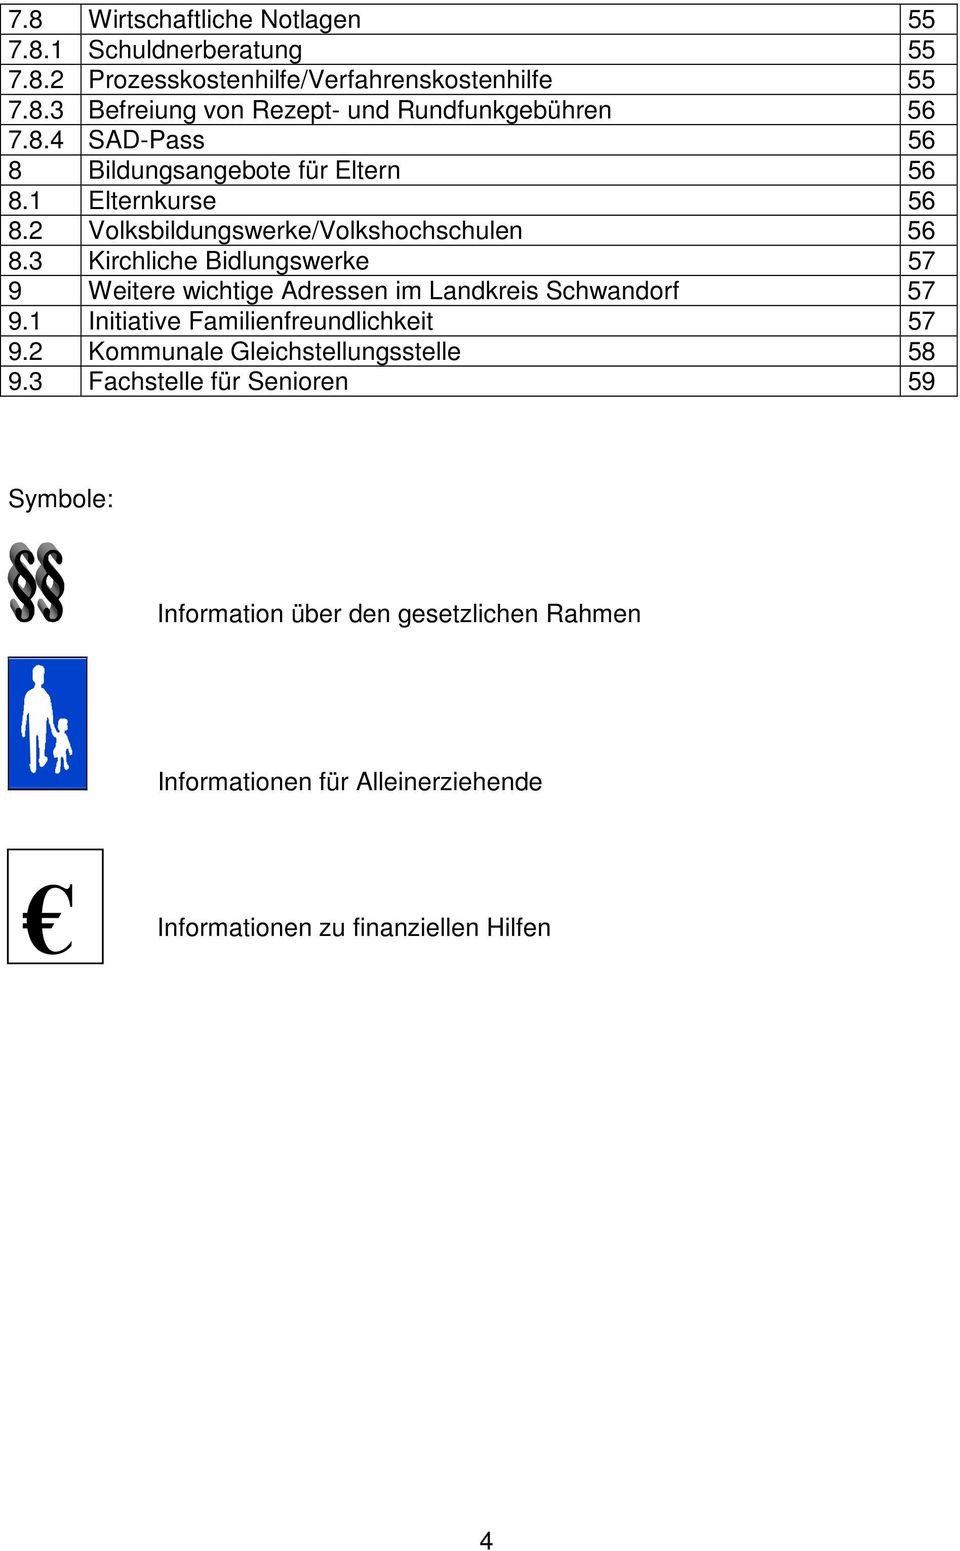 3 Kirchliche Bidlungswerke 57 9 Weitere wichtige Adressen im Landkreis Schwandorf 57 9.1 Initiative Familienfreundlichkeit 57 9.